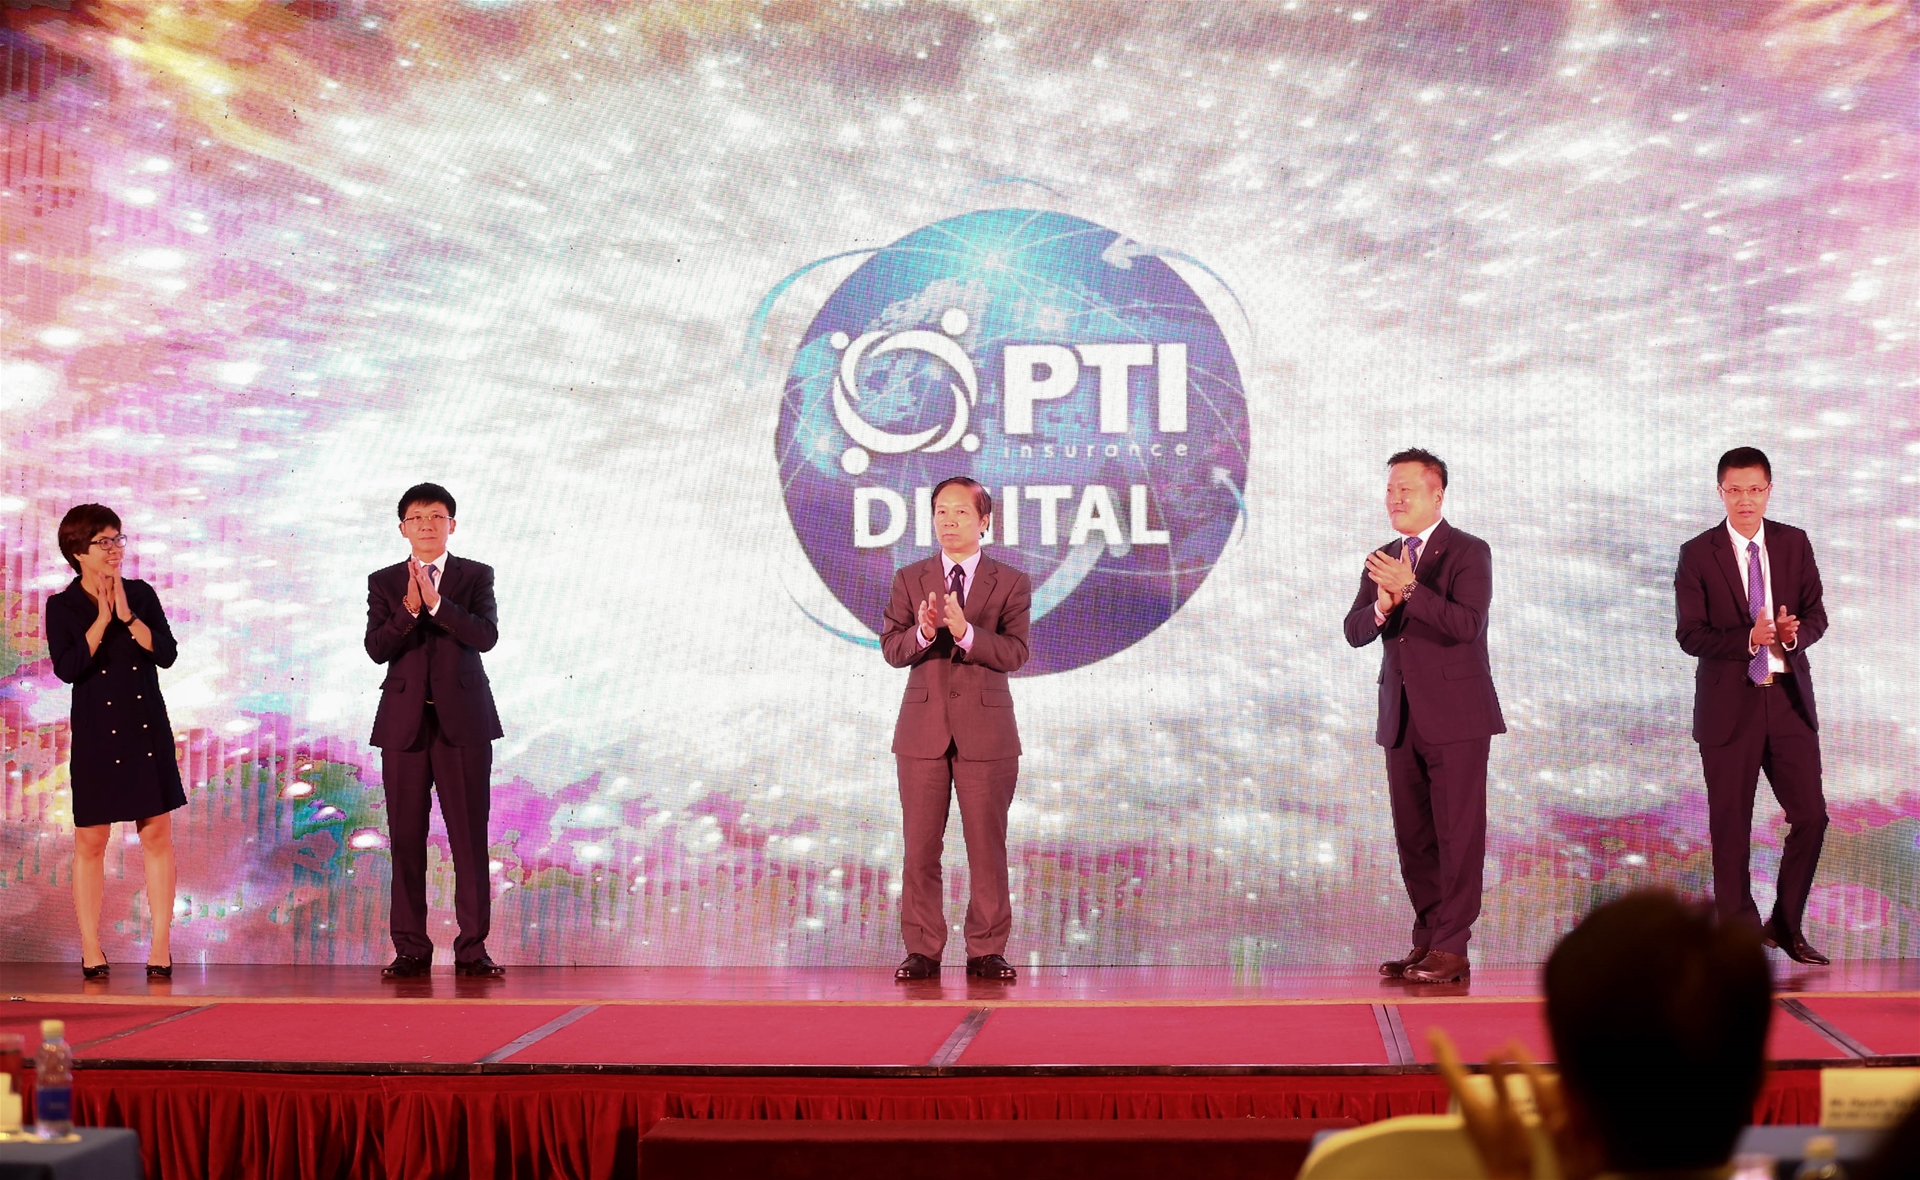 Ra mắt Công ty Bảo hiểm Thời đại số - PTI Digital